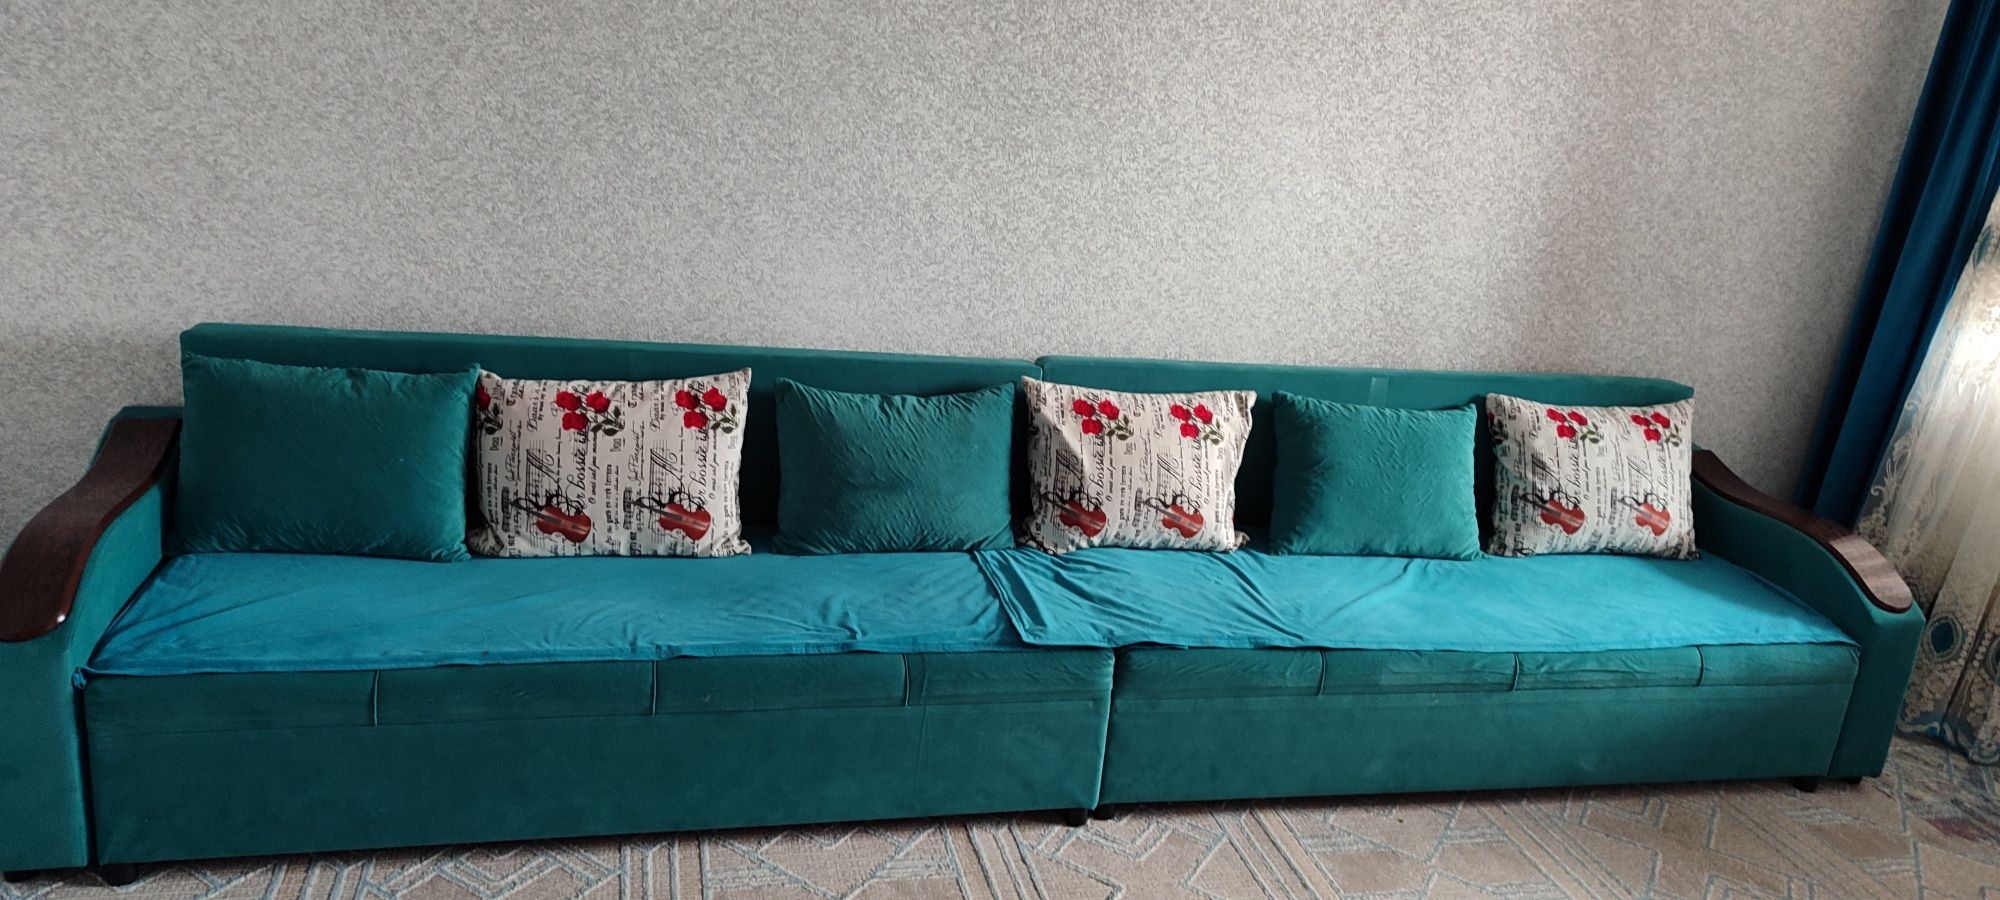 Продам диван в отличном состояний еврокнидка 4 метра